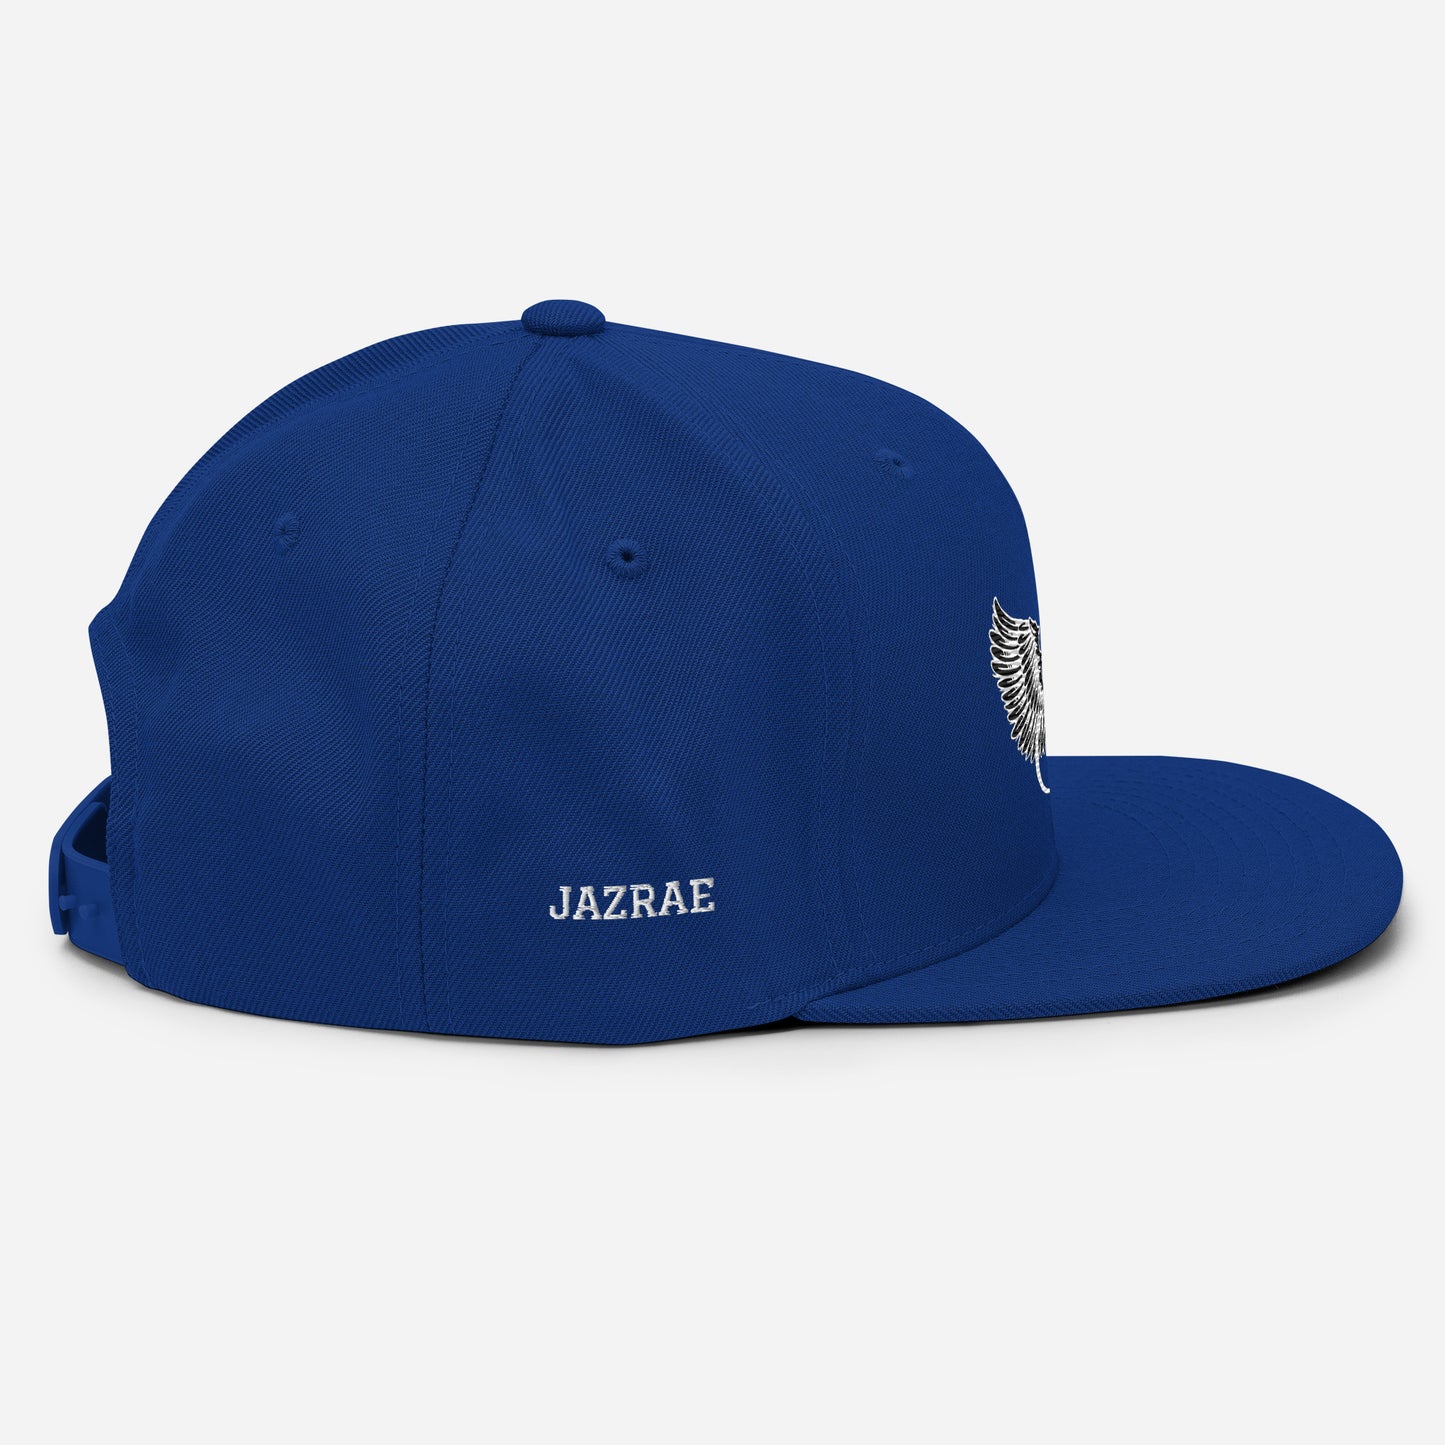 JAZRAE JR Wings Snapback Hat